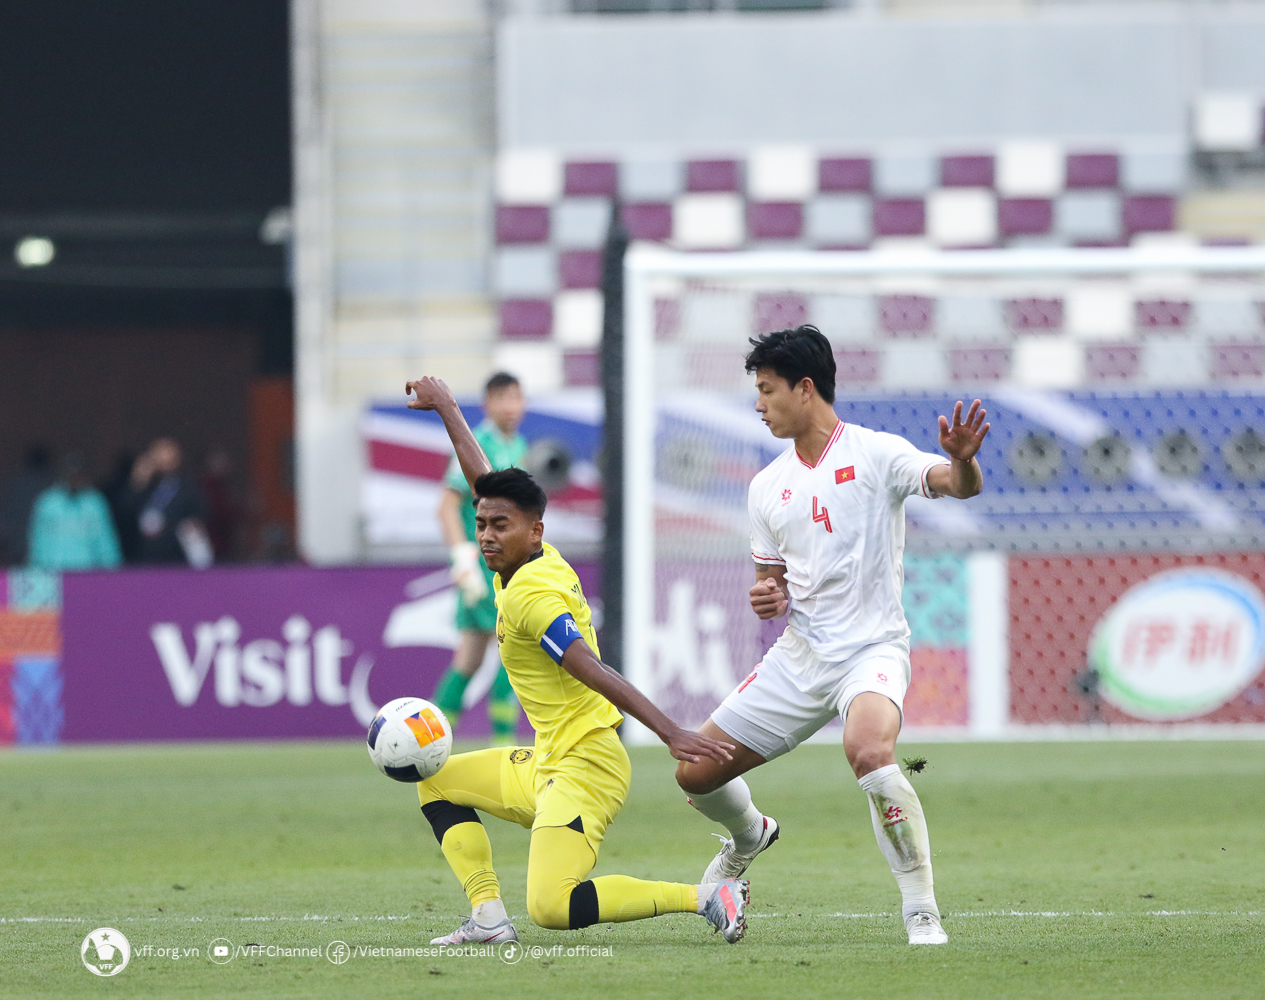 Thua 0-2, HLV Malaysia nói thẳng về trình độ của U23 Việt Nam - Bóng Đá